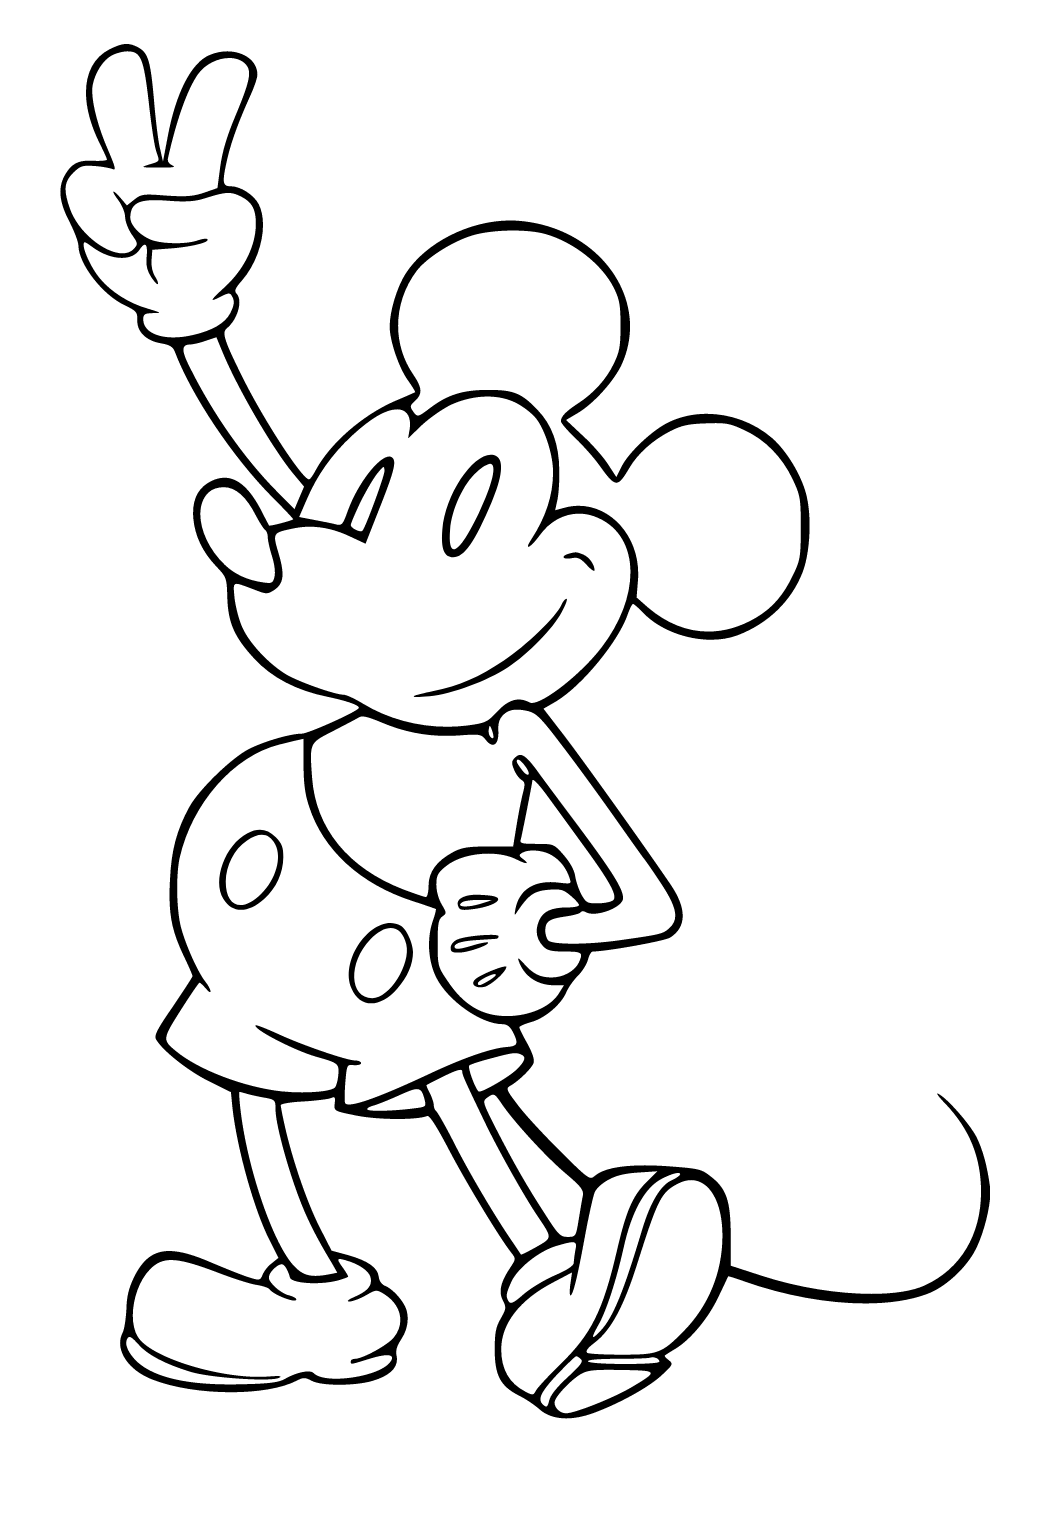 ミッキーマウス